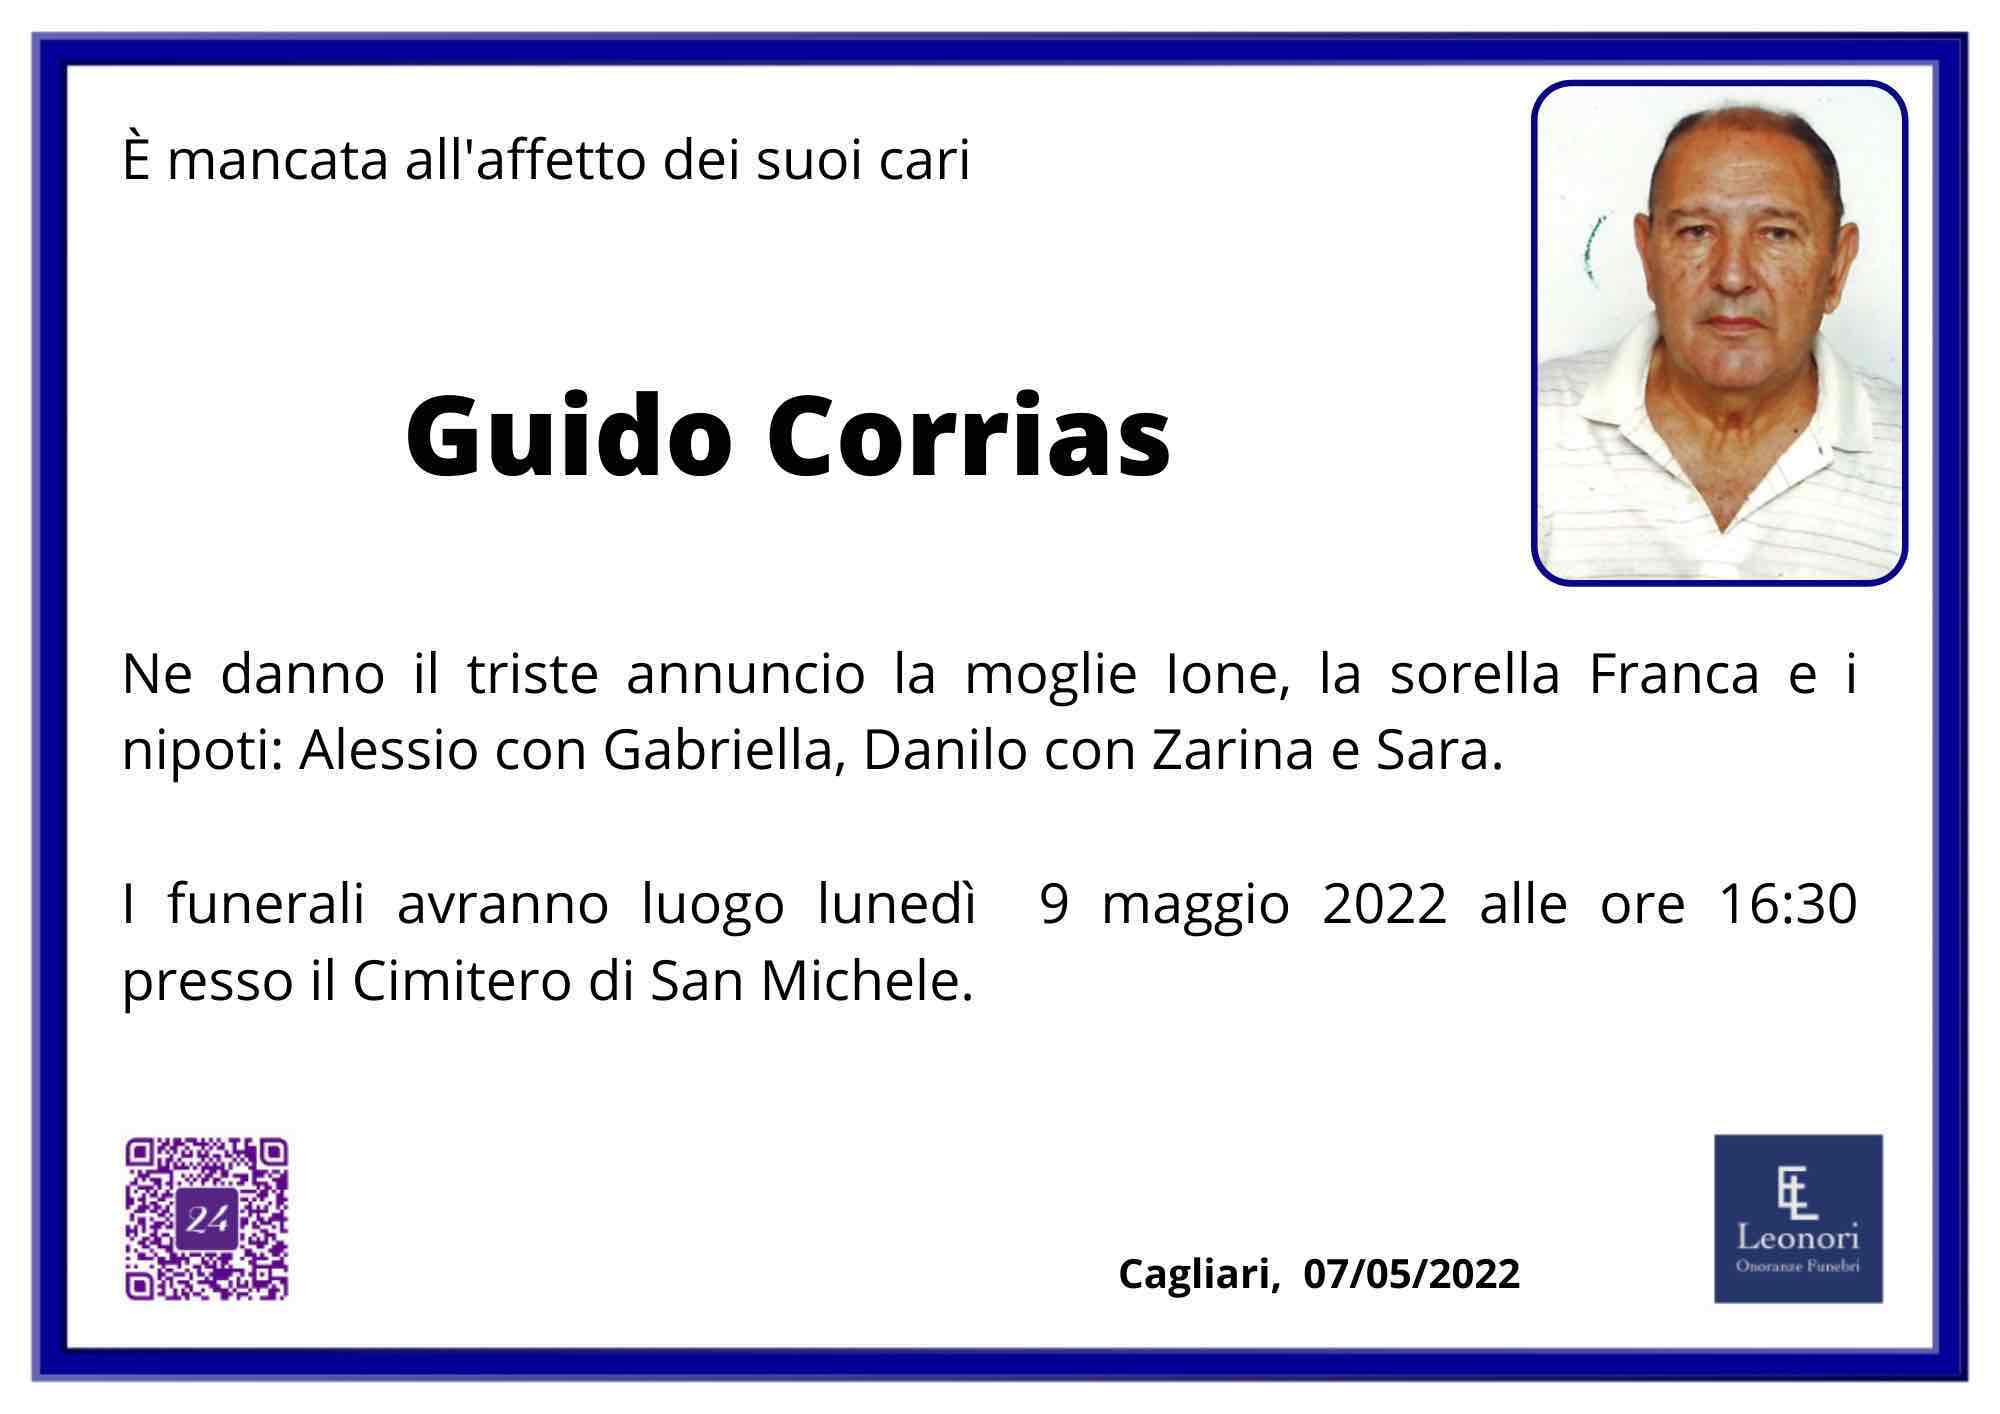 Guido Corrias